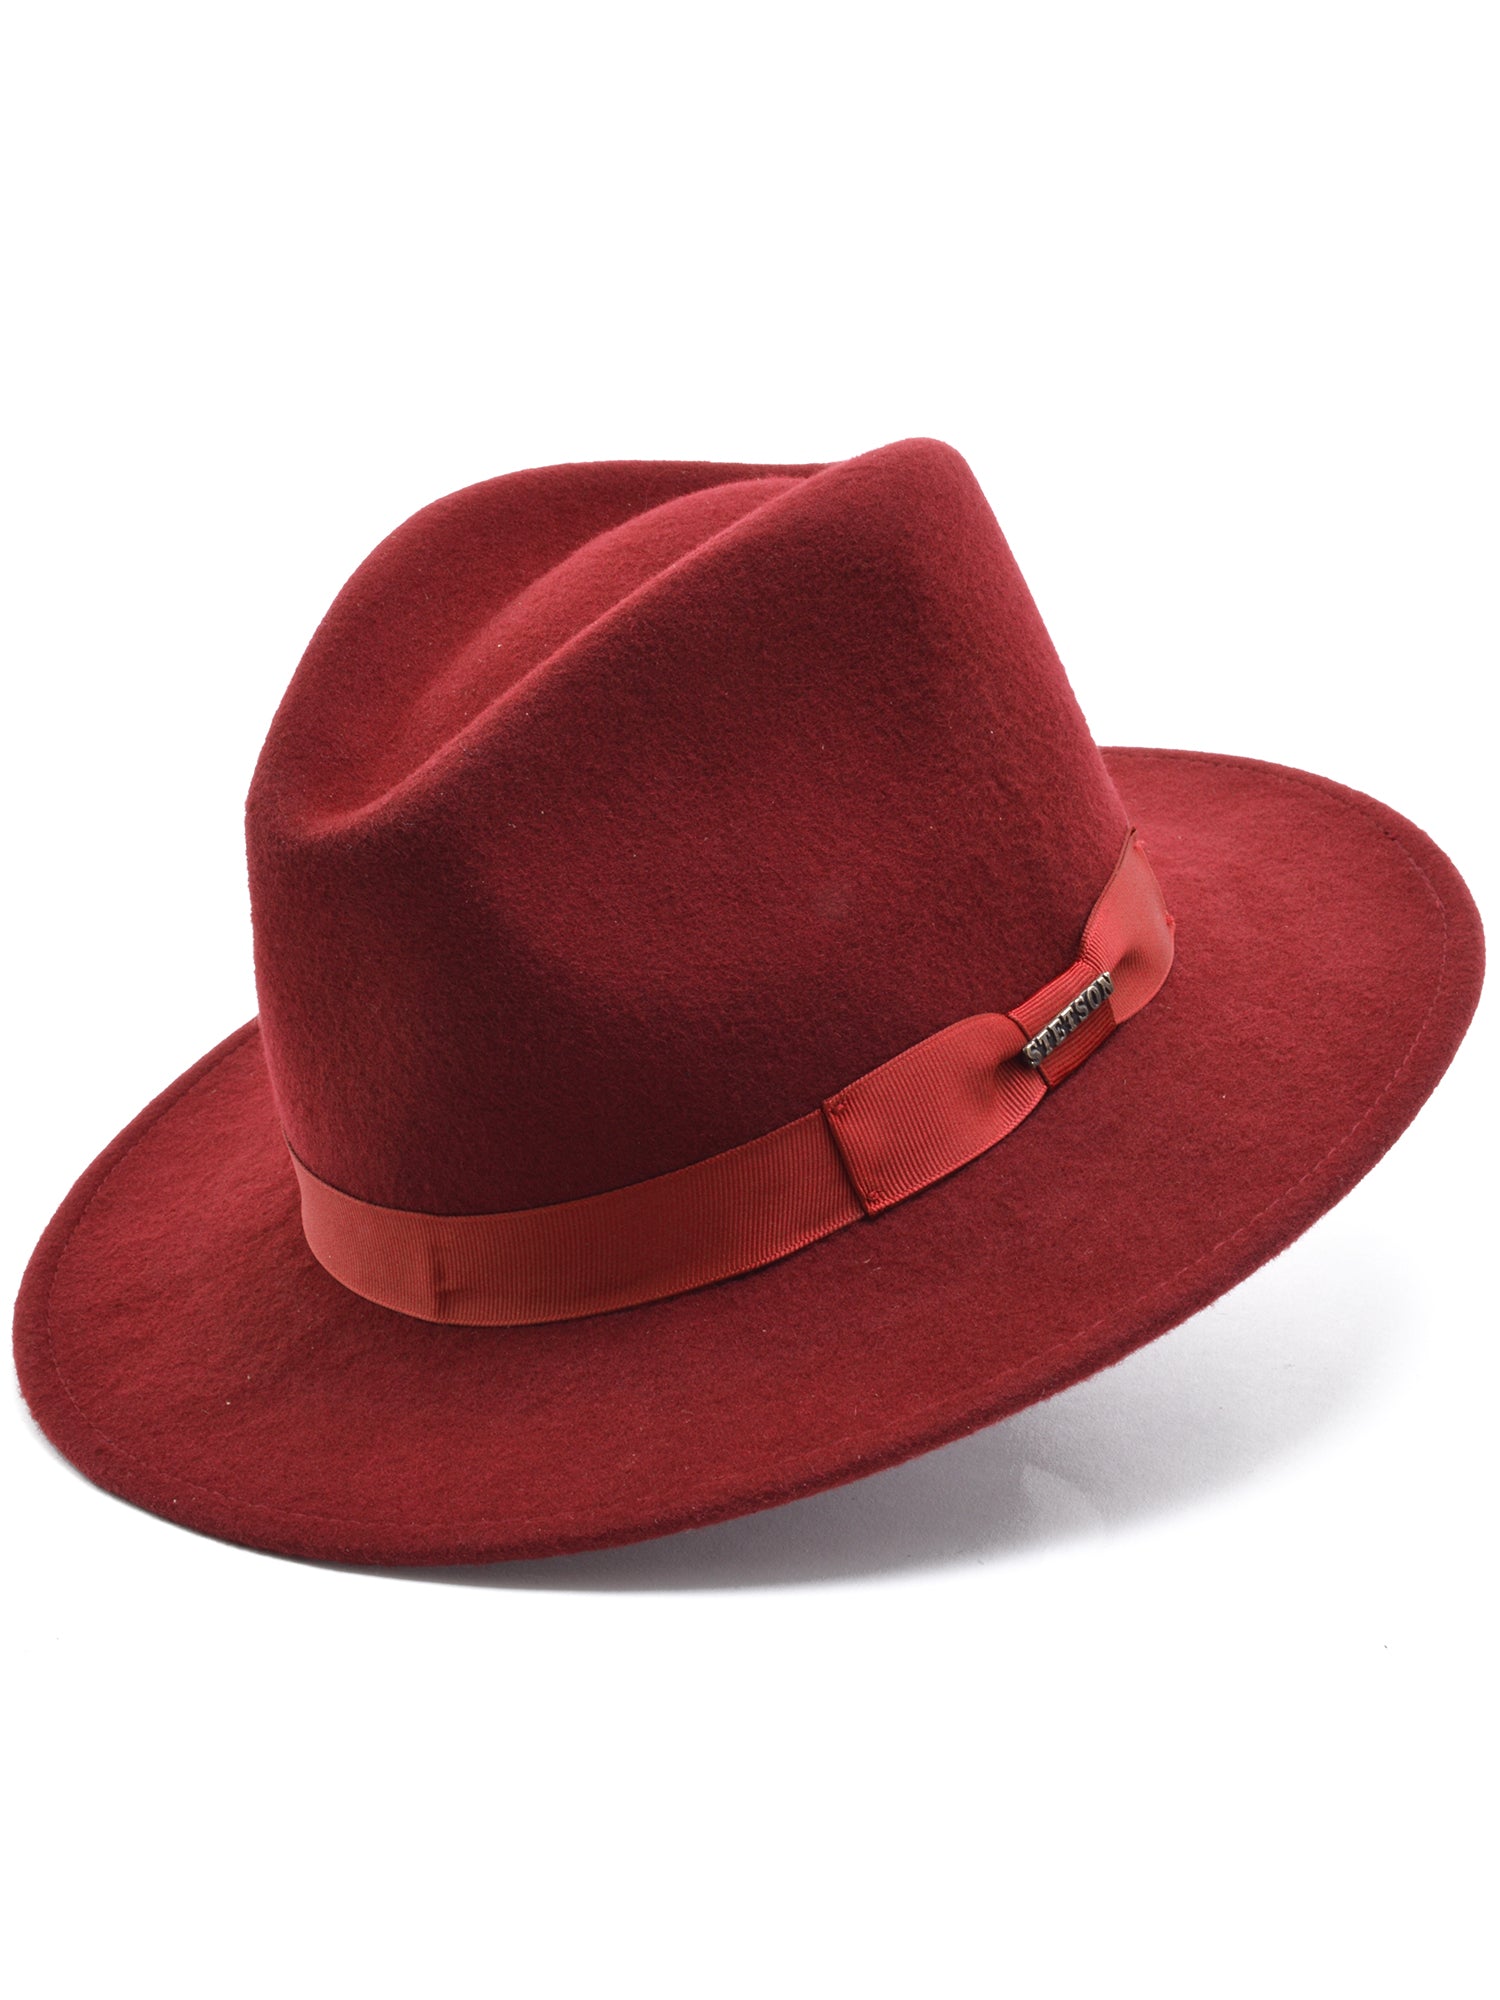 Stetson Wool Felt Markham Pinch Front Cowboy Hat in Burgundy